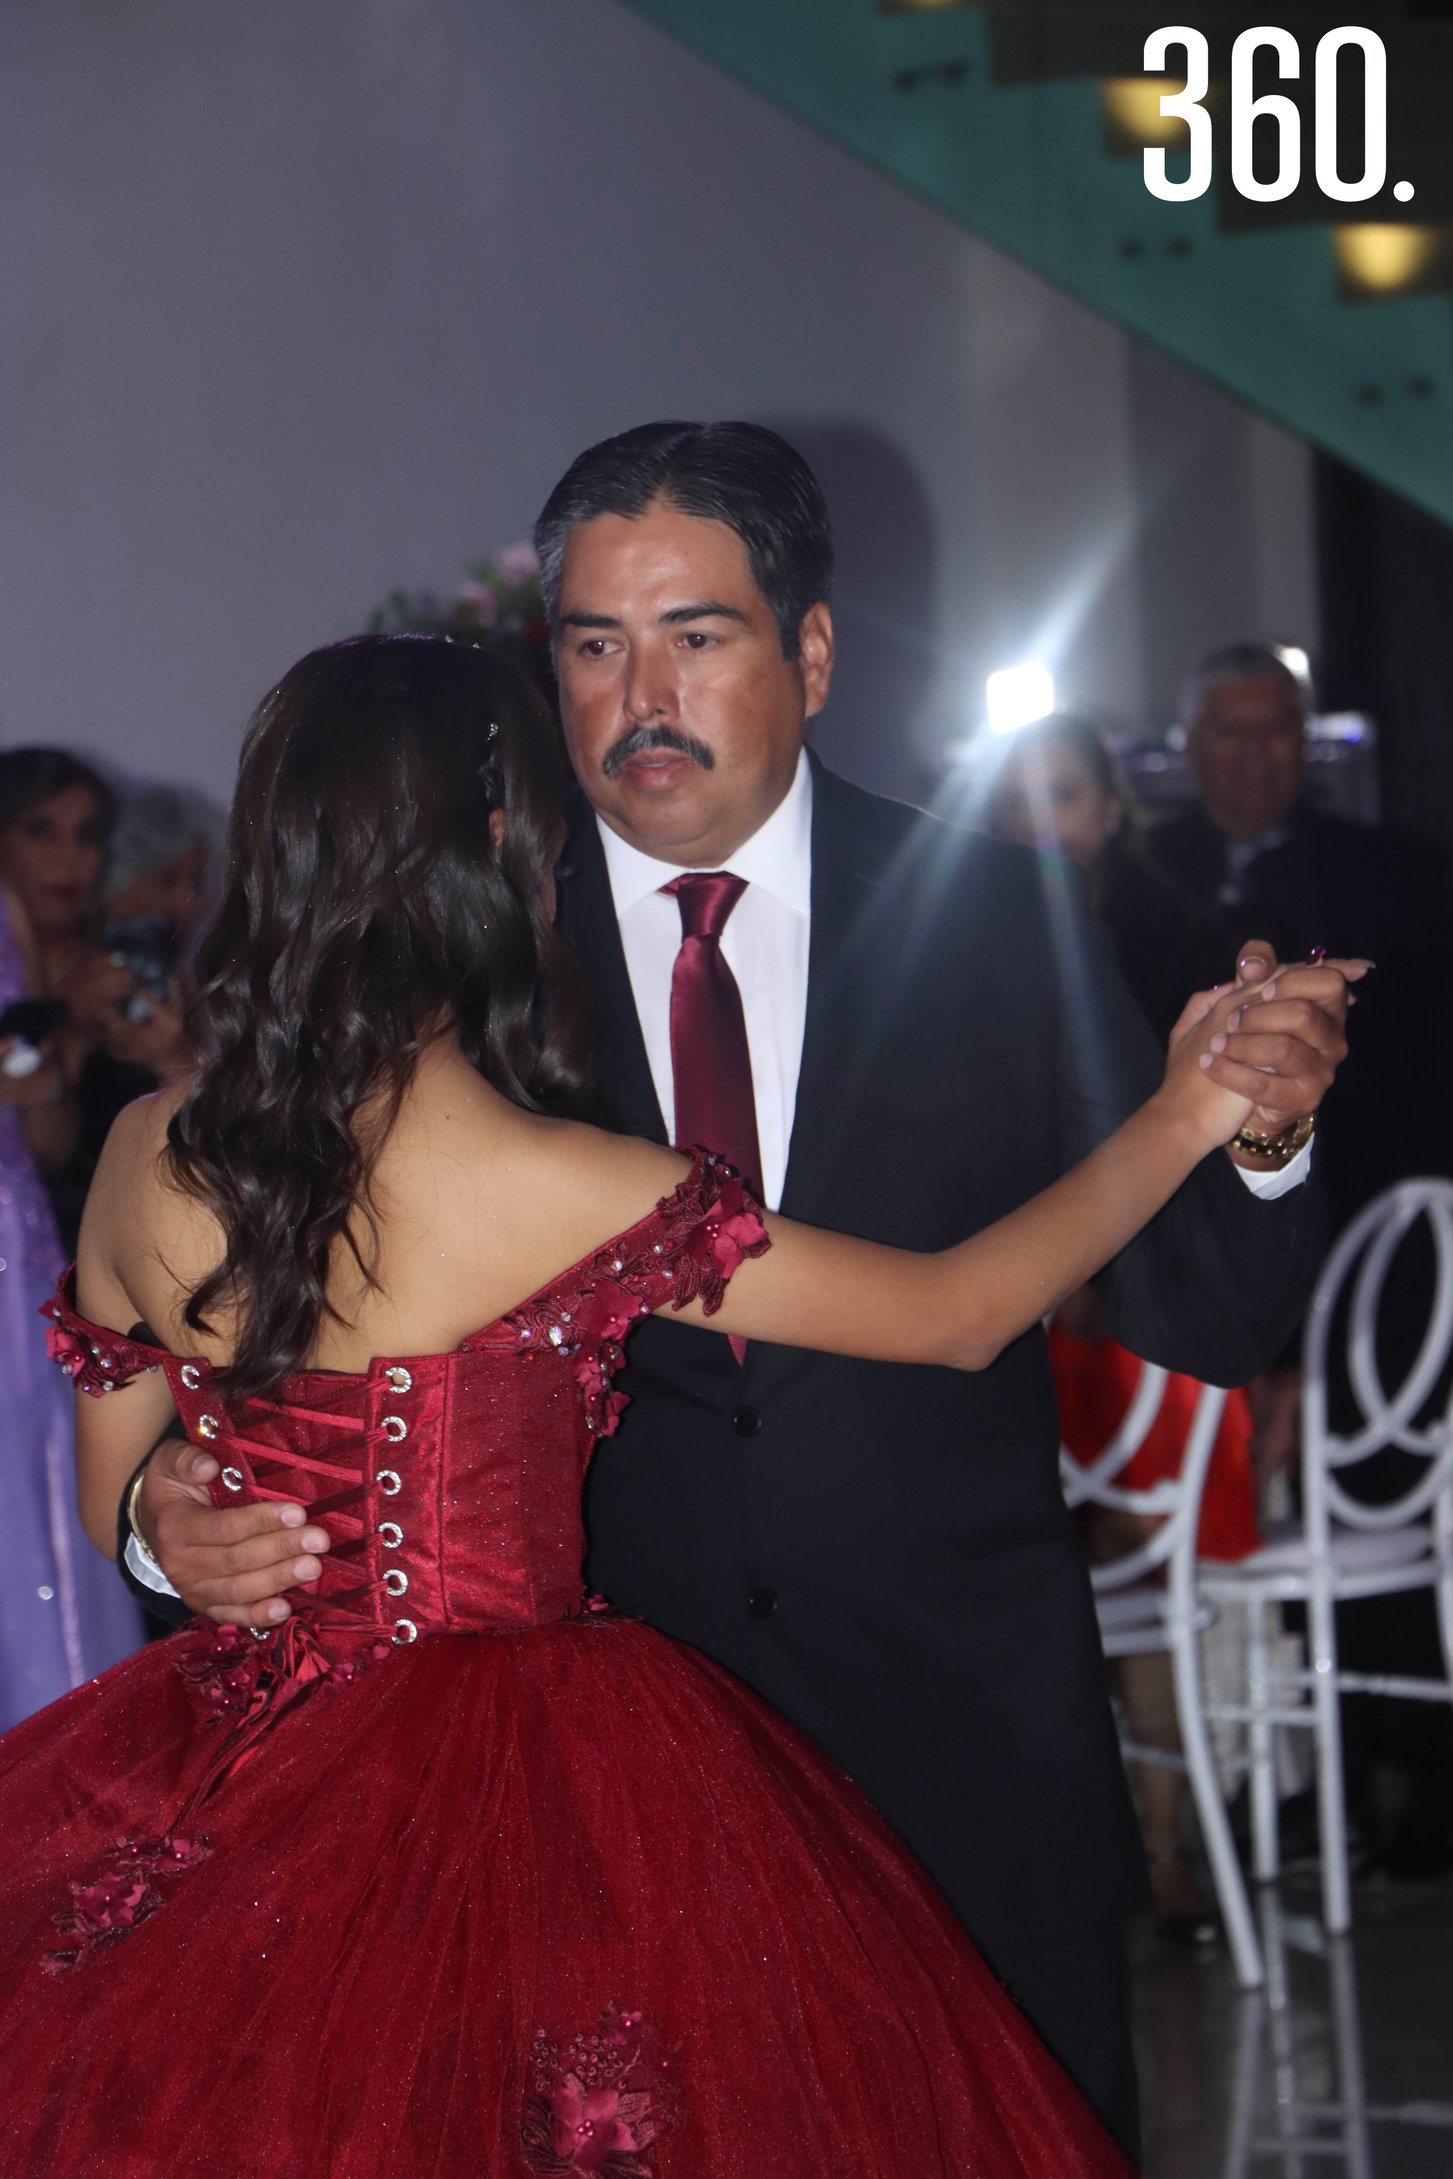 Luisa y su padre, Arturo Ceniceros bailando el vals.